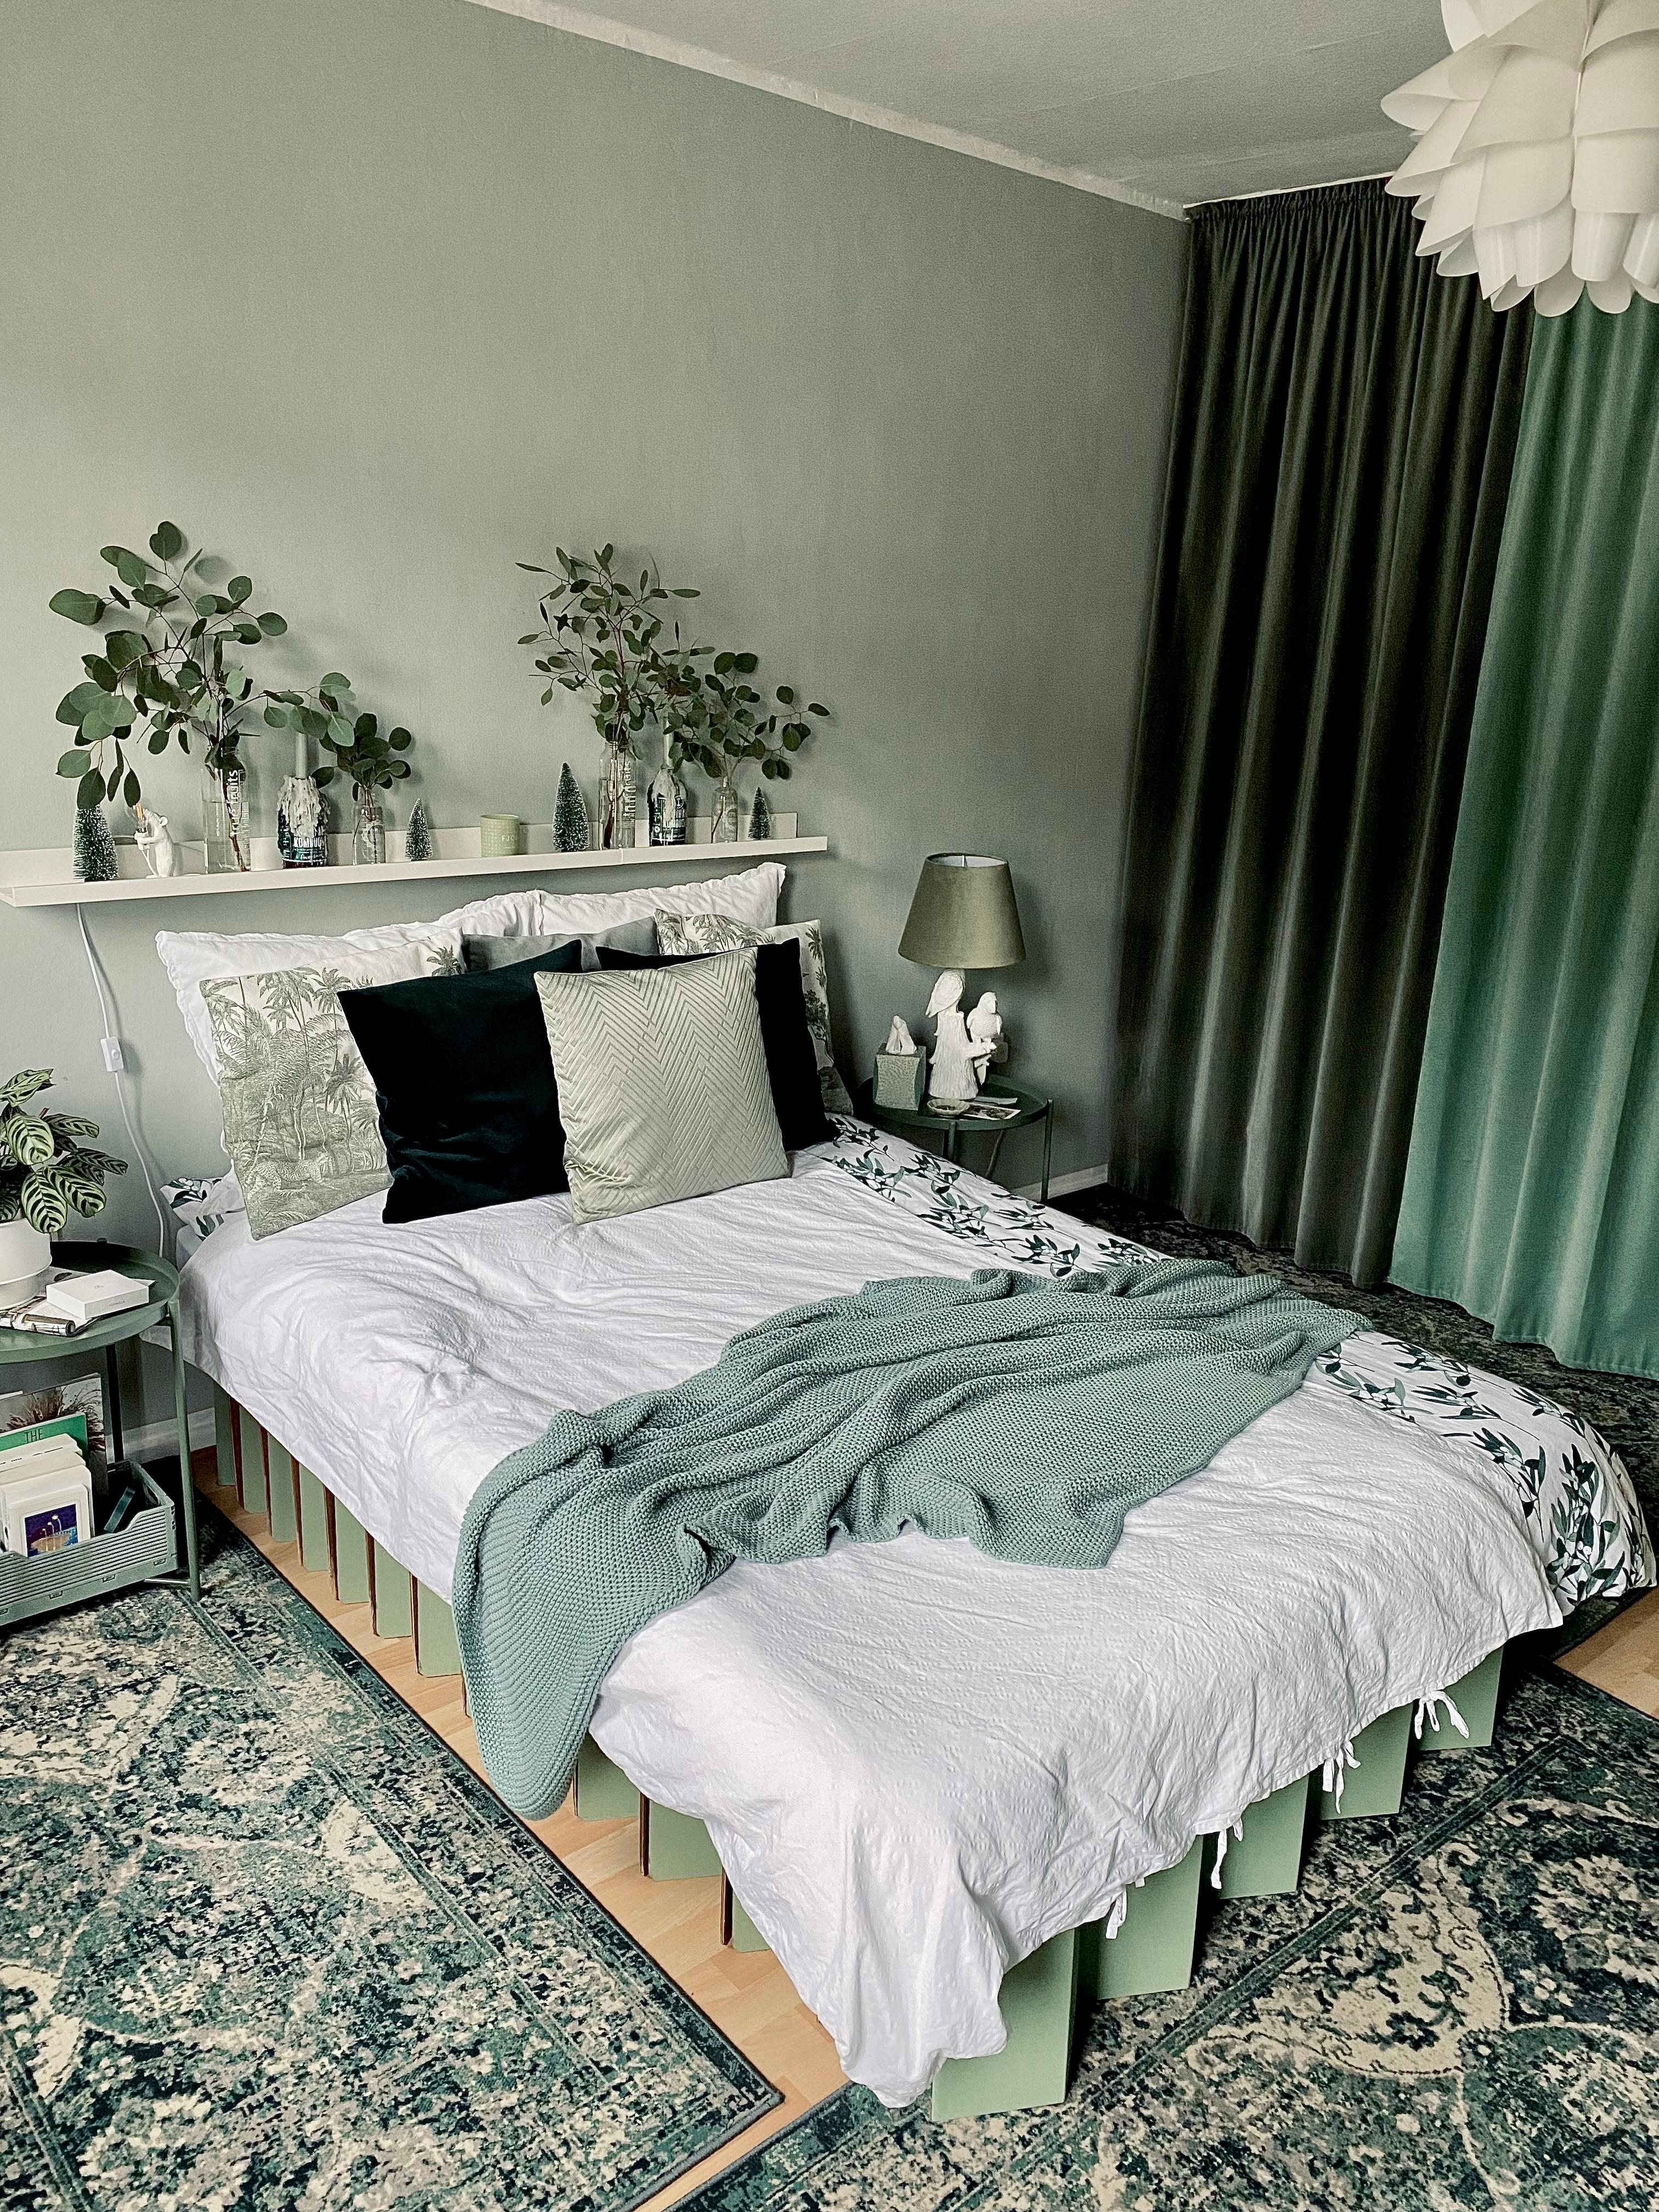 #greengreengreen #sustainable sleeping #roominabox